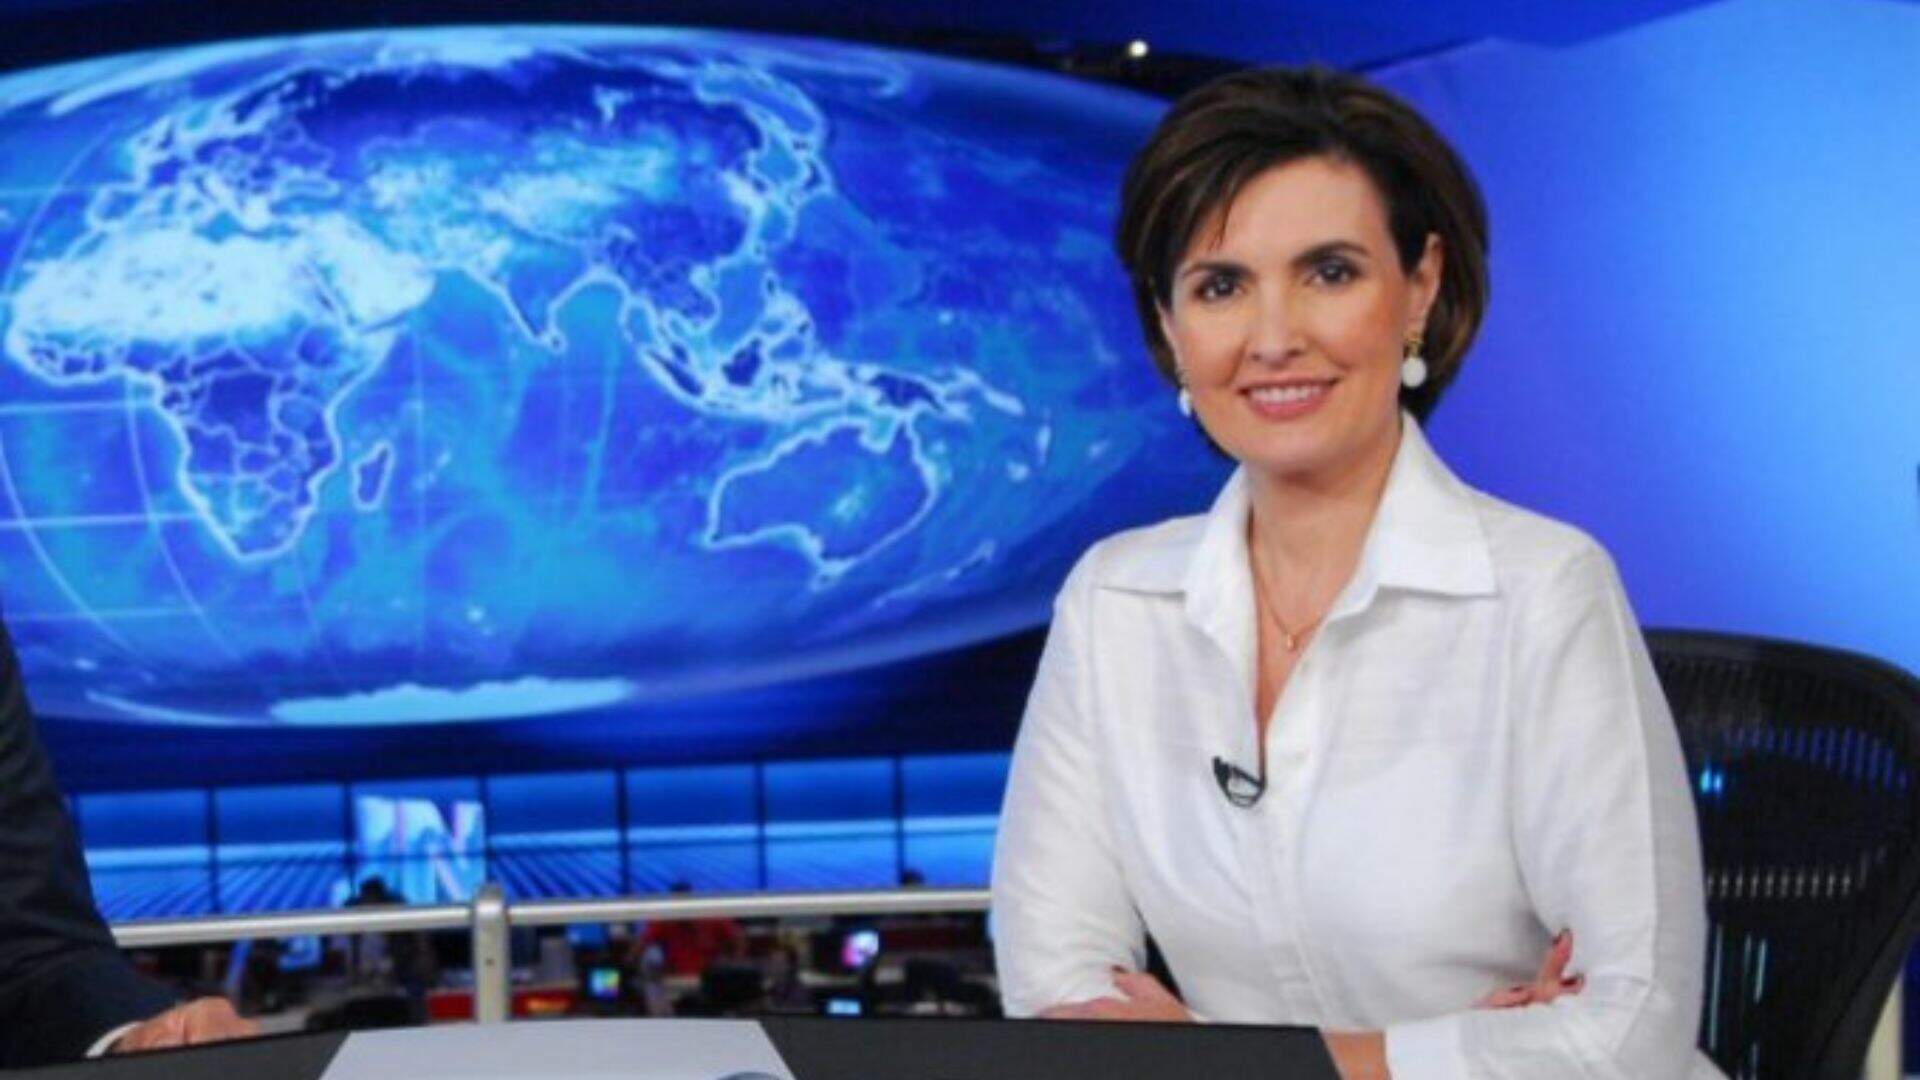 De volta? Fátima Bernardes surpreende ao surgir nos estúdios do ‘Jornal Nacional’ - Metropolitana FM